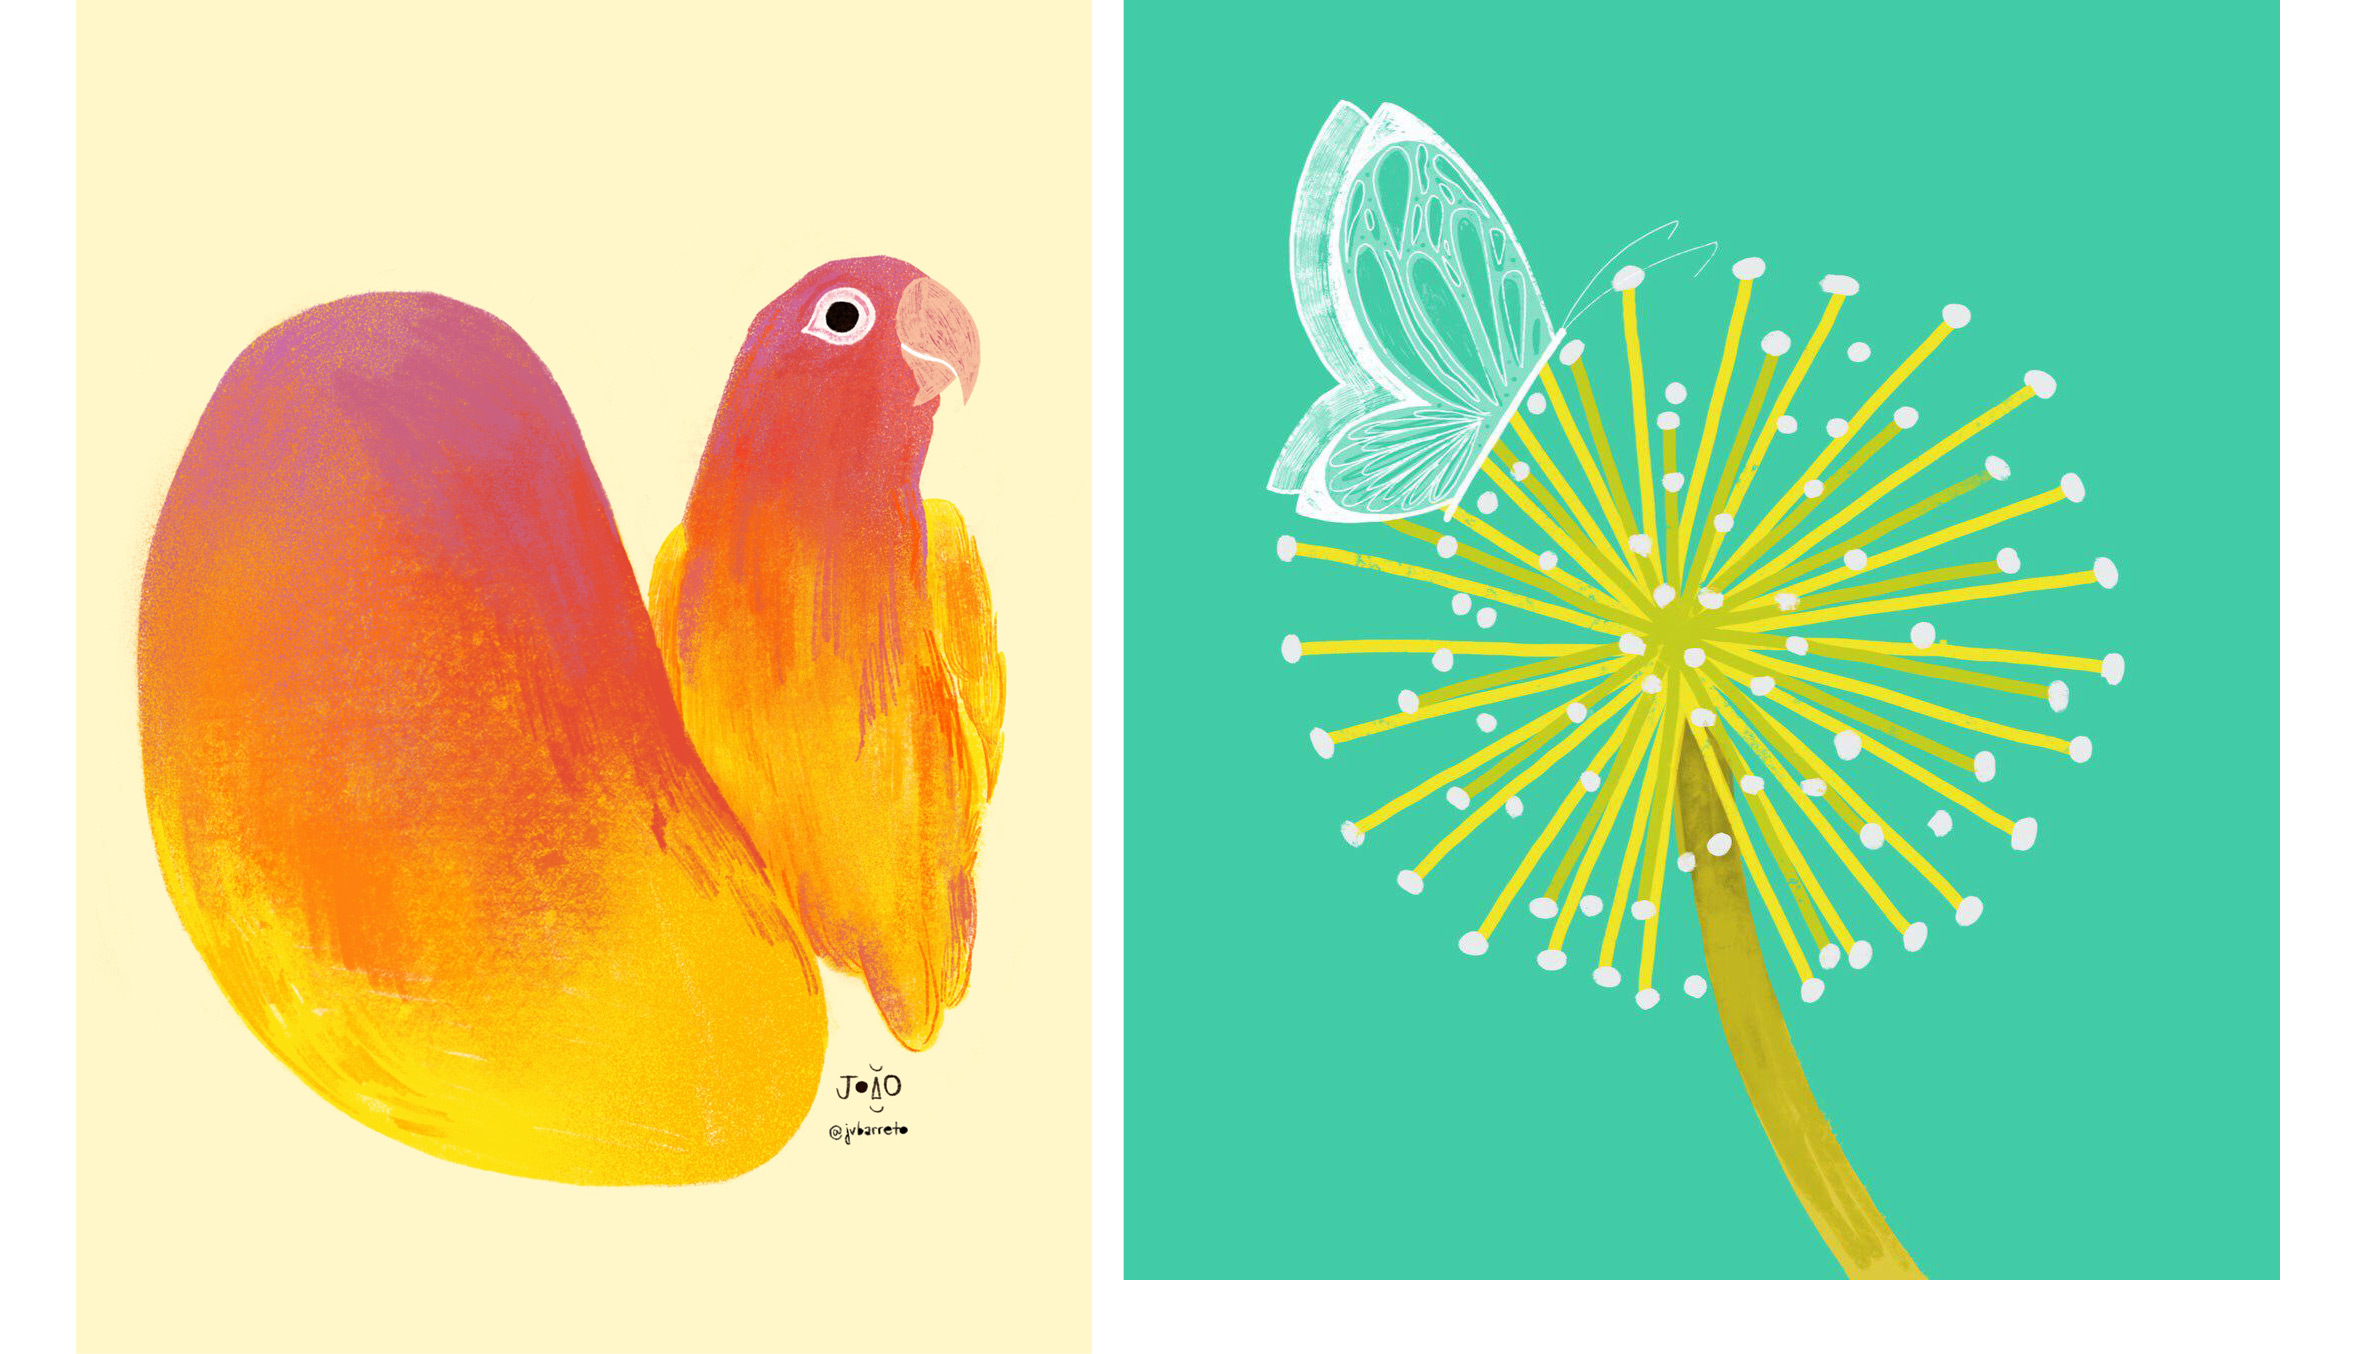 Ilustrações feitas por João Barreto. Da esquerda para a direita: manga ao lado de pássaro; borboleta em um dente de leão